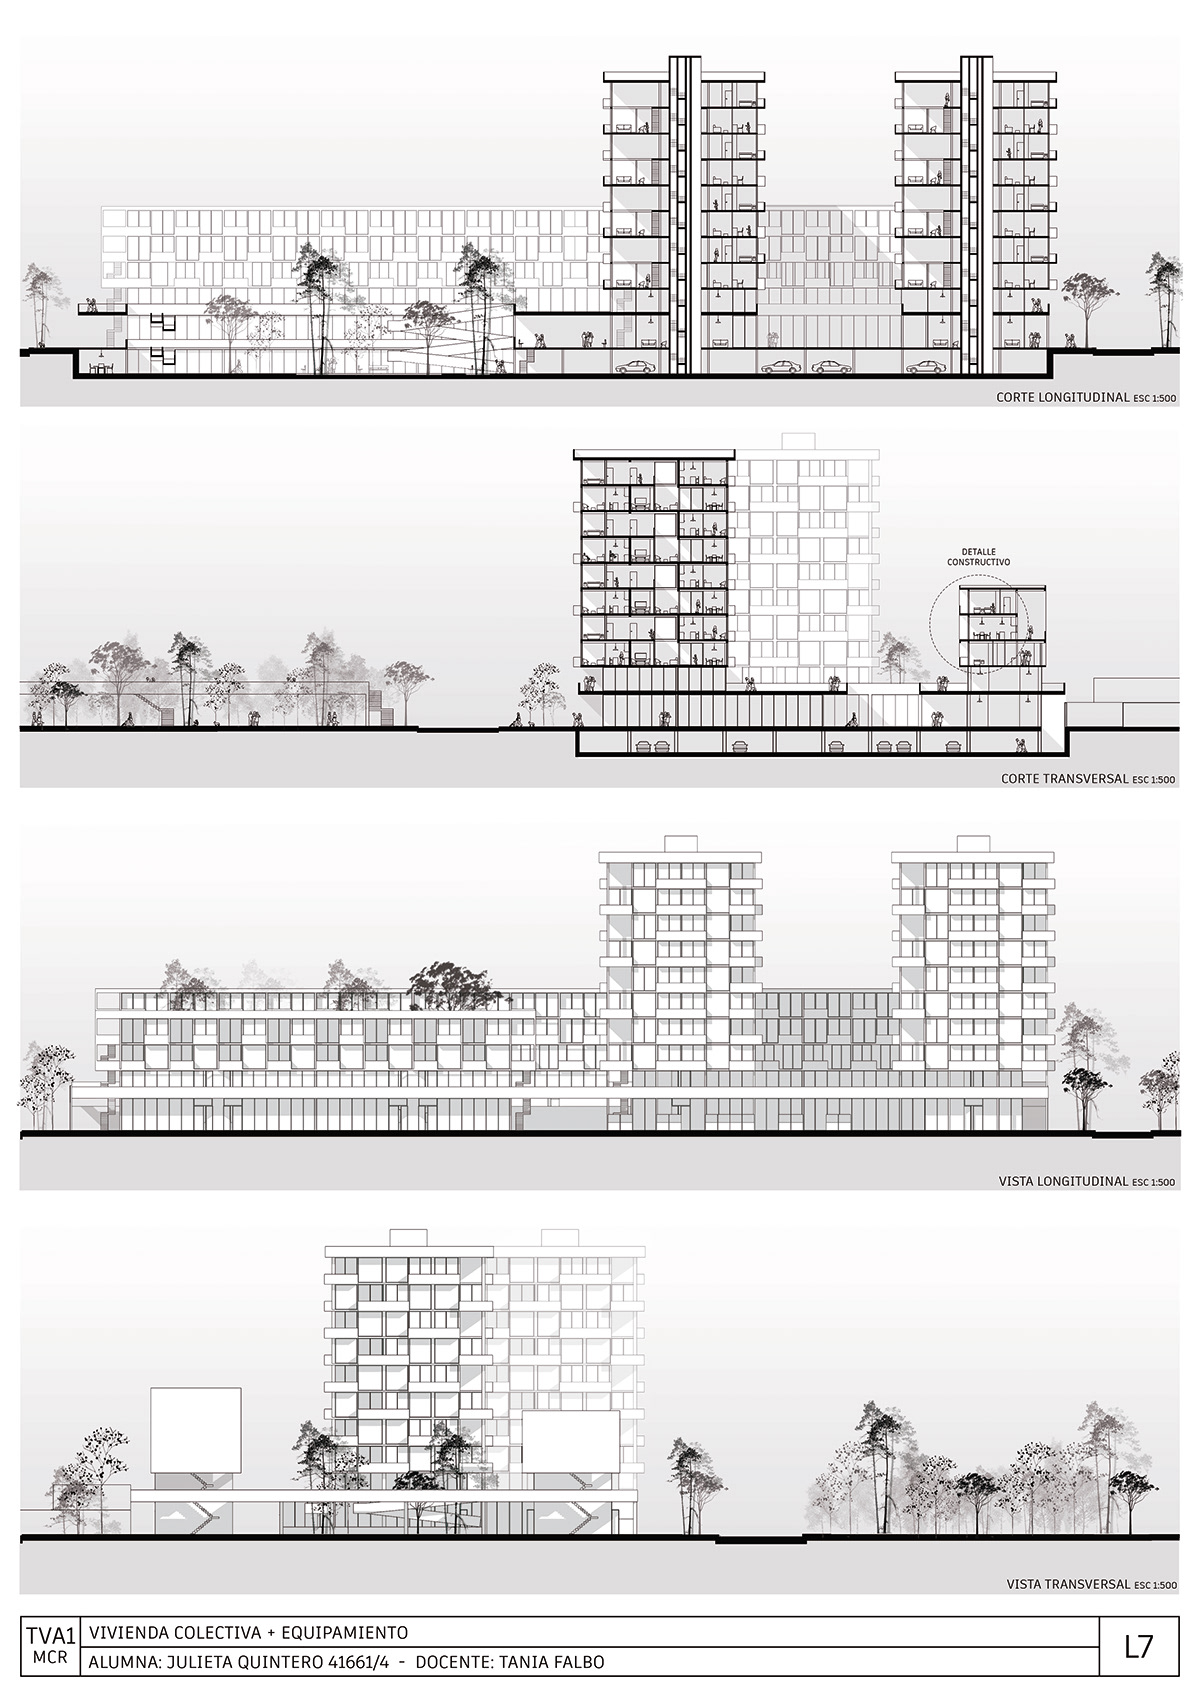 proyecto arquitectura diseño vivienda equipamiento ciudad architecture Render modern conjunto habitacional